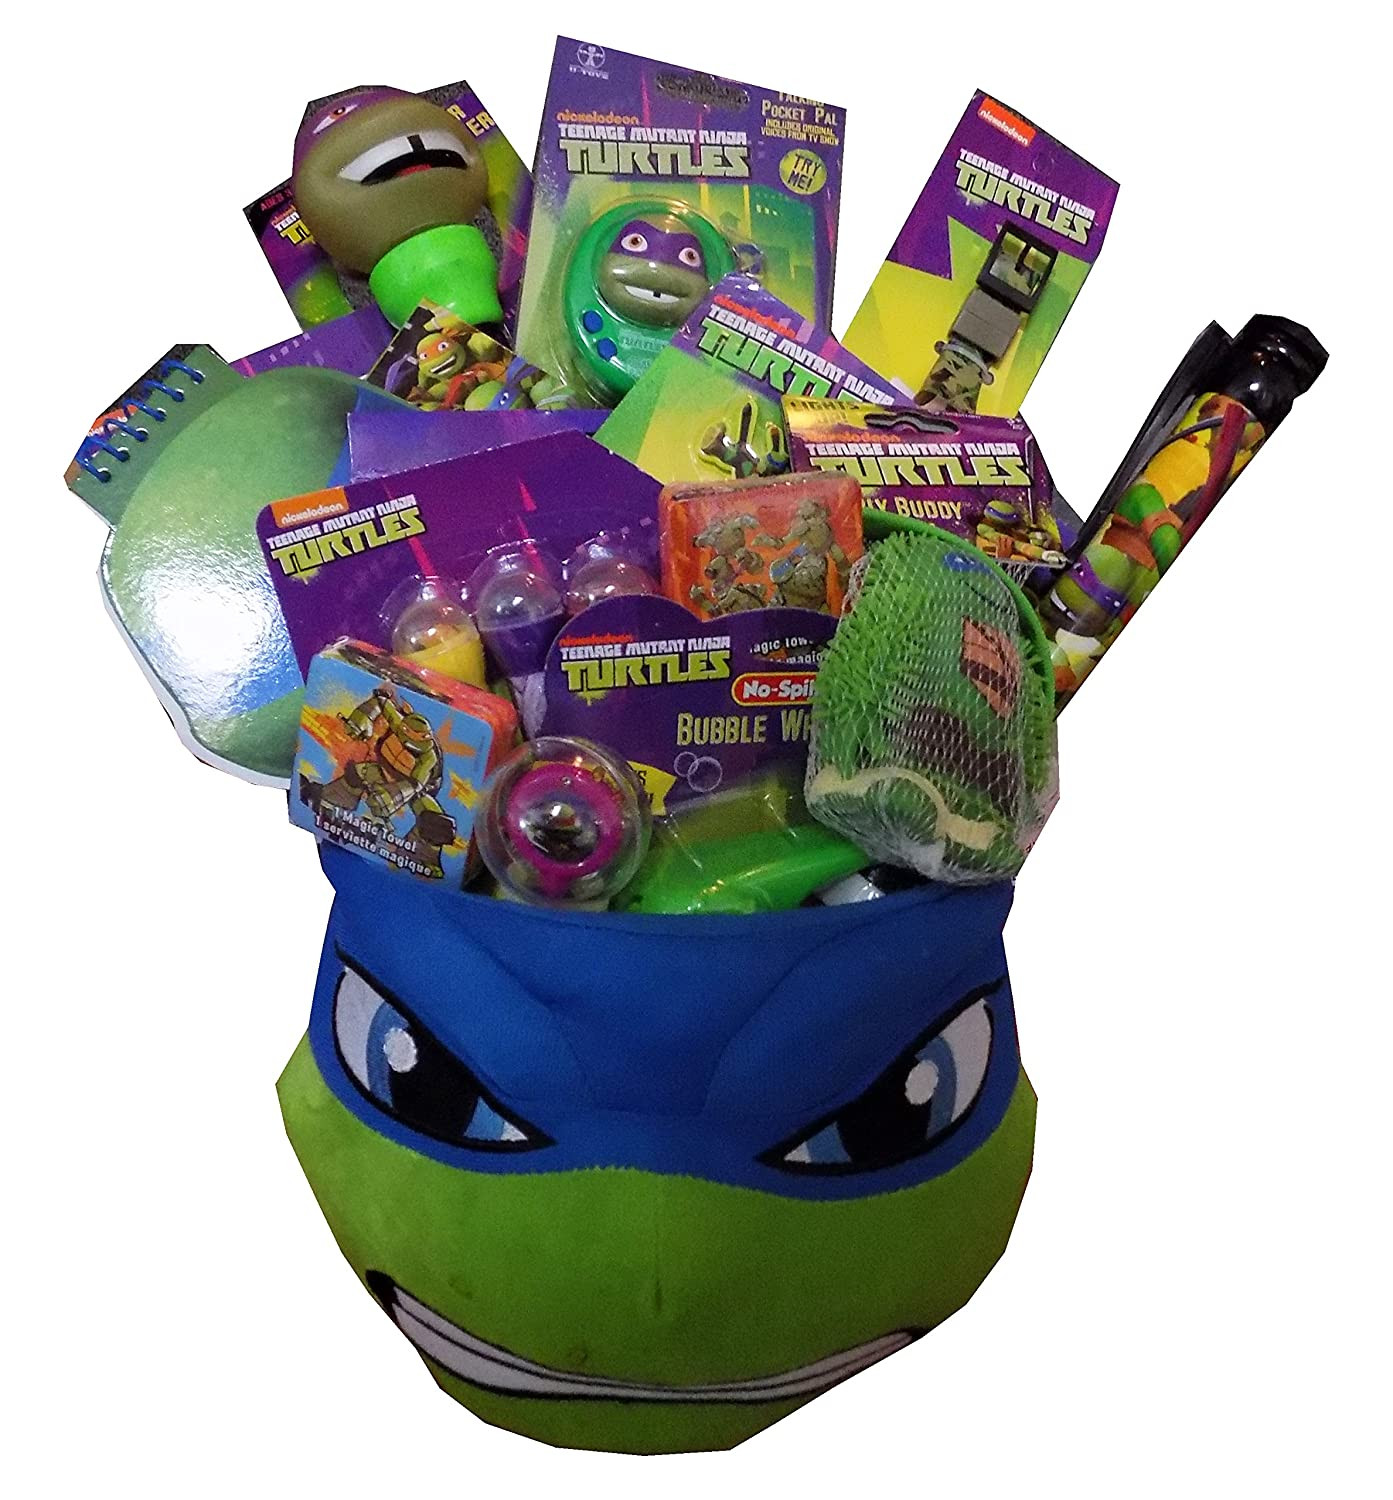 Ninja Turtle Easter Basket Ideas
 Best Teenage Mutant Ninja Turtle Easter Basket Home Tech